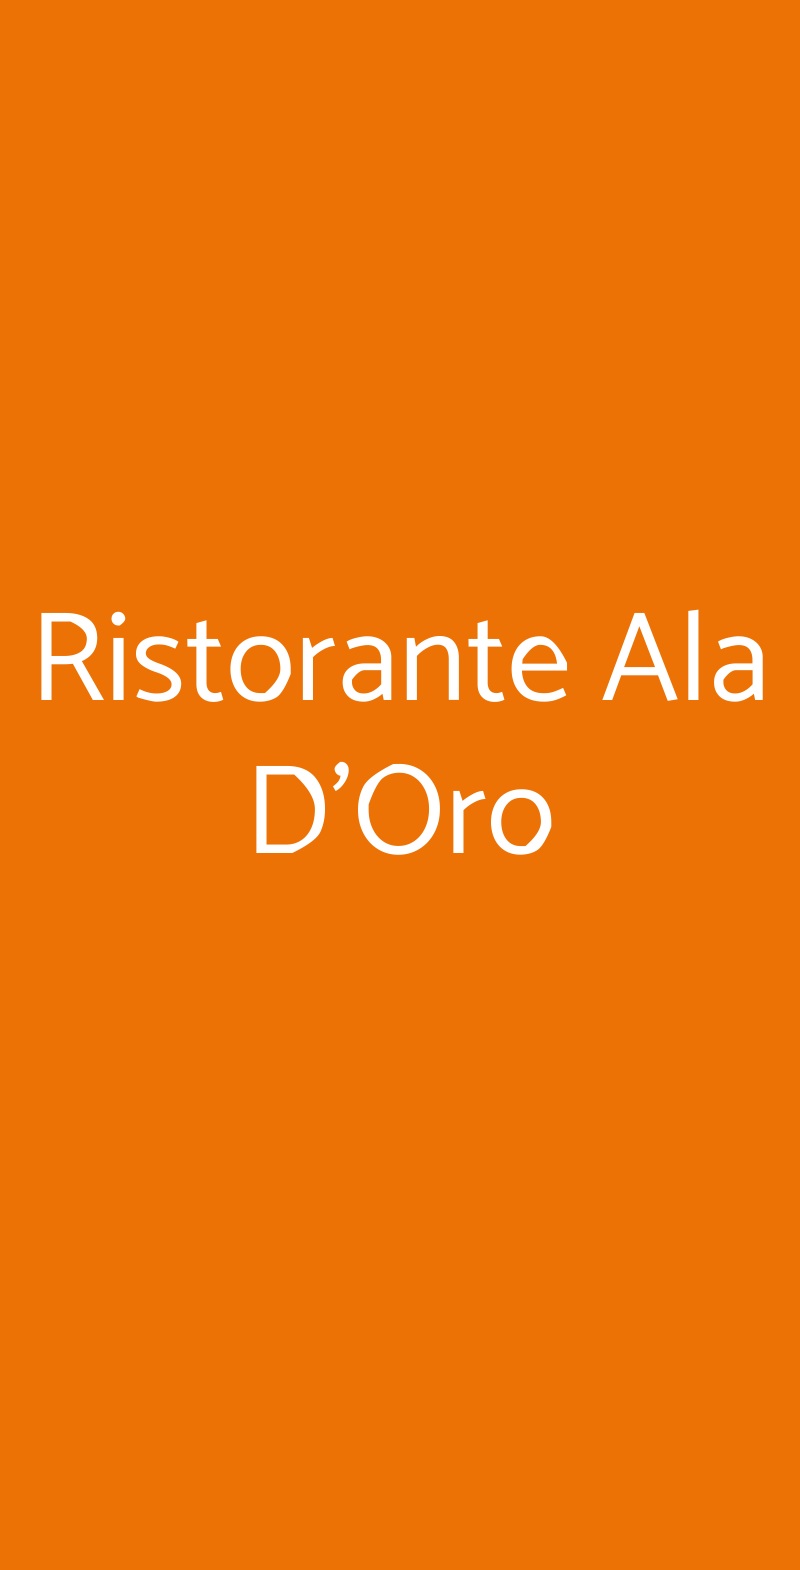 Ristorante Ala D'Oro Lugo menù 1 pagina